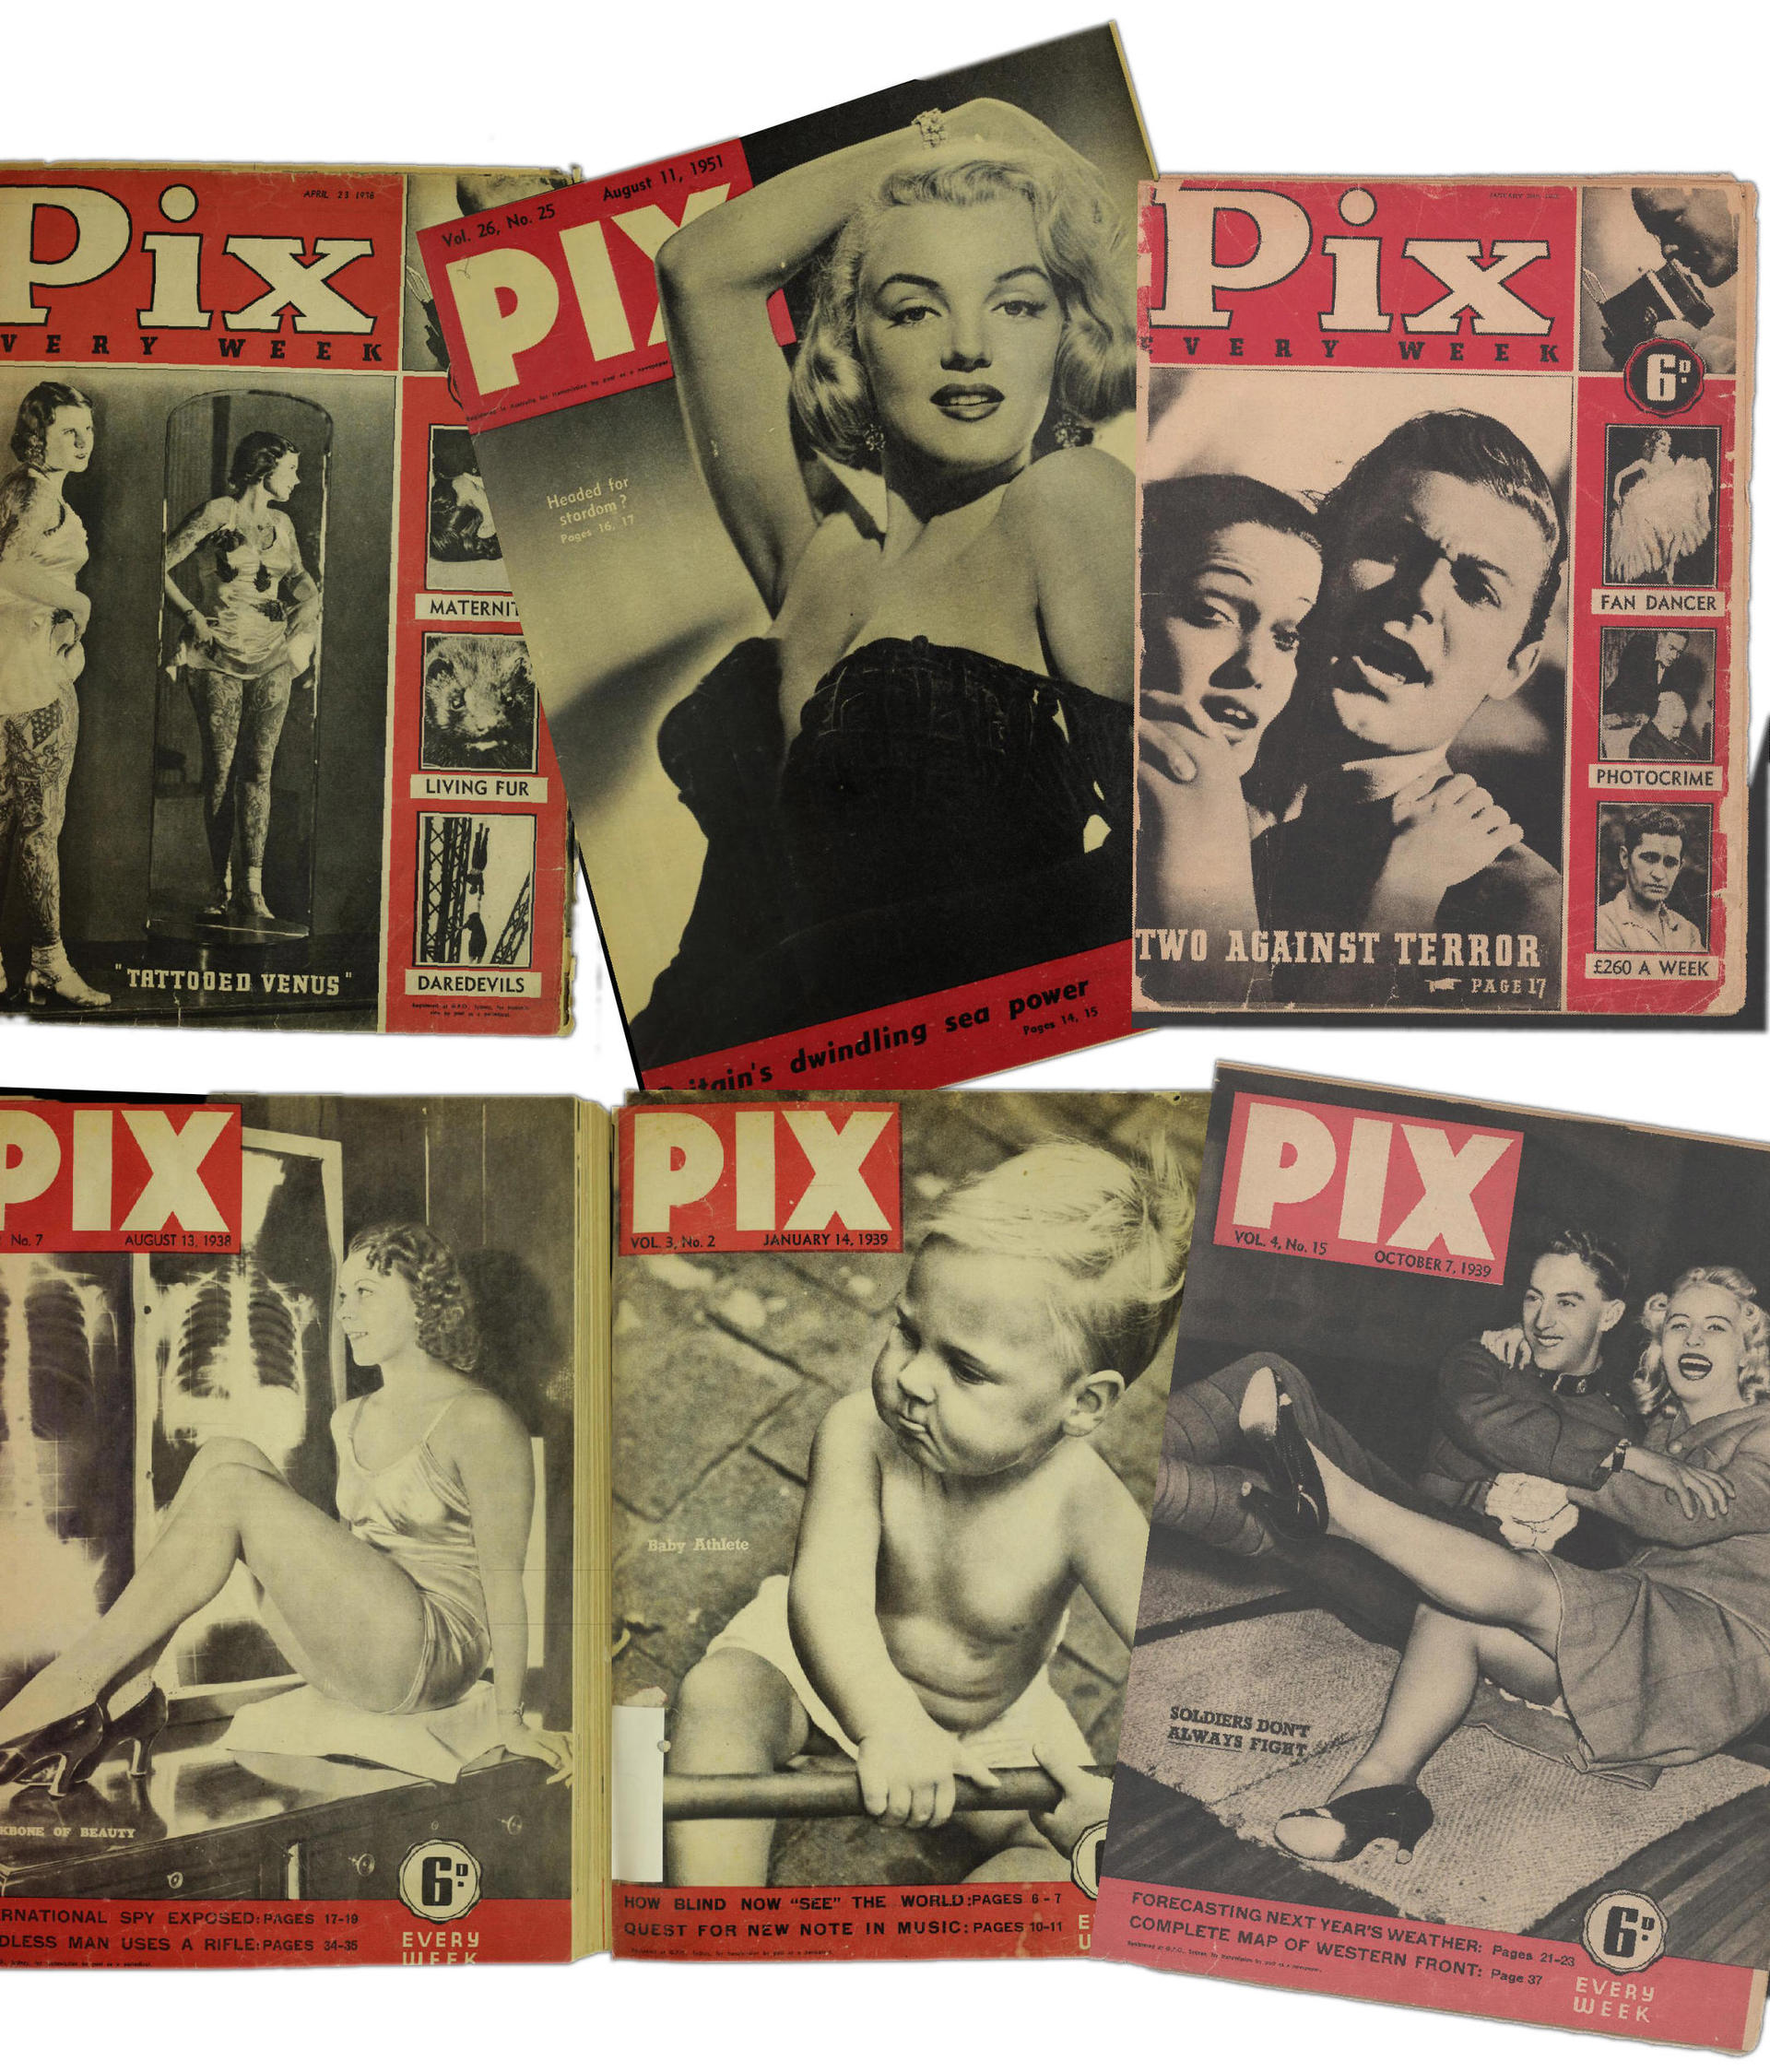 Covers of Pix magazine